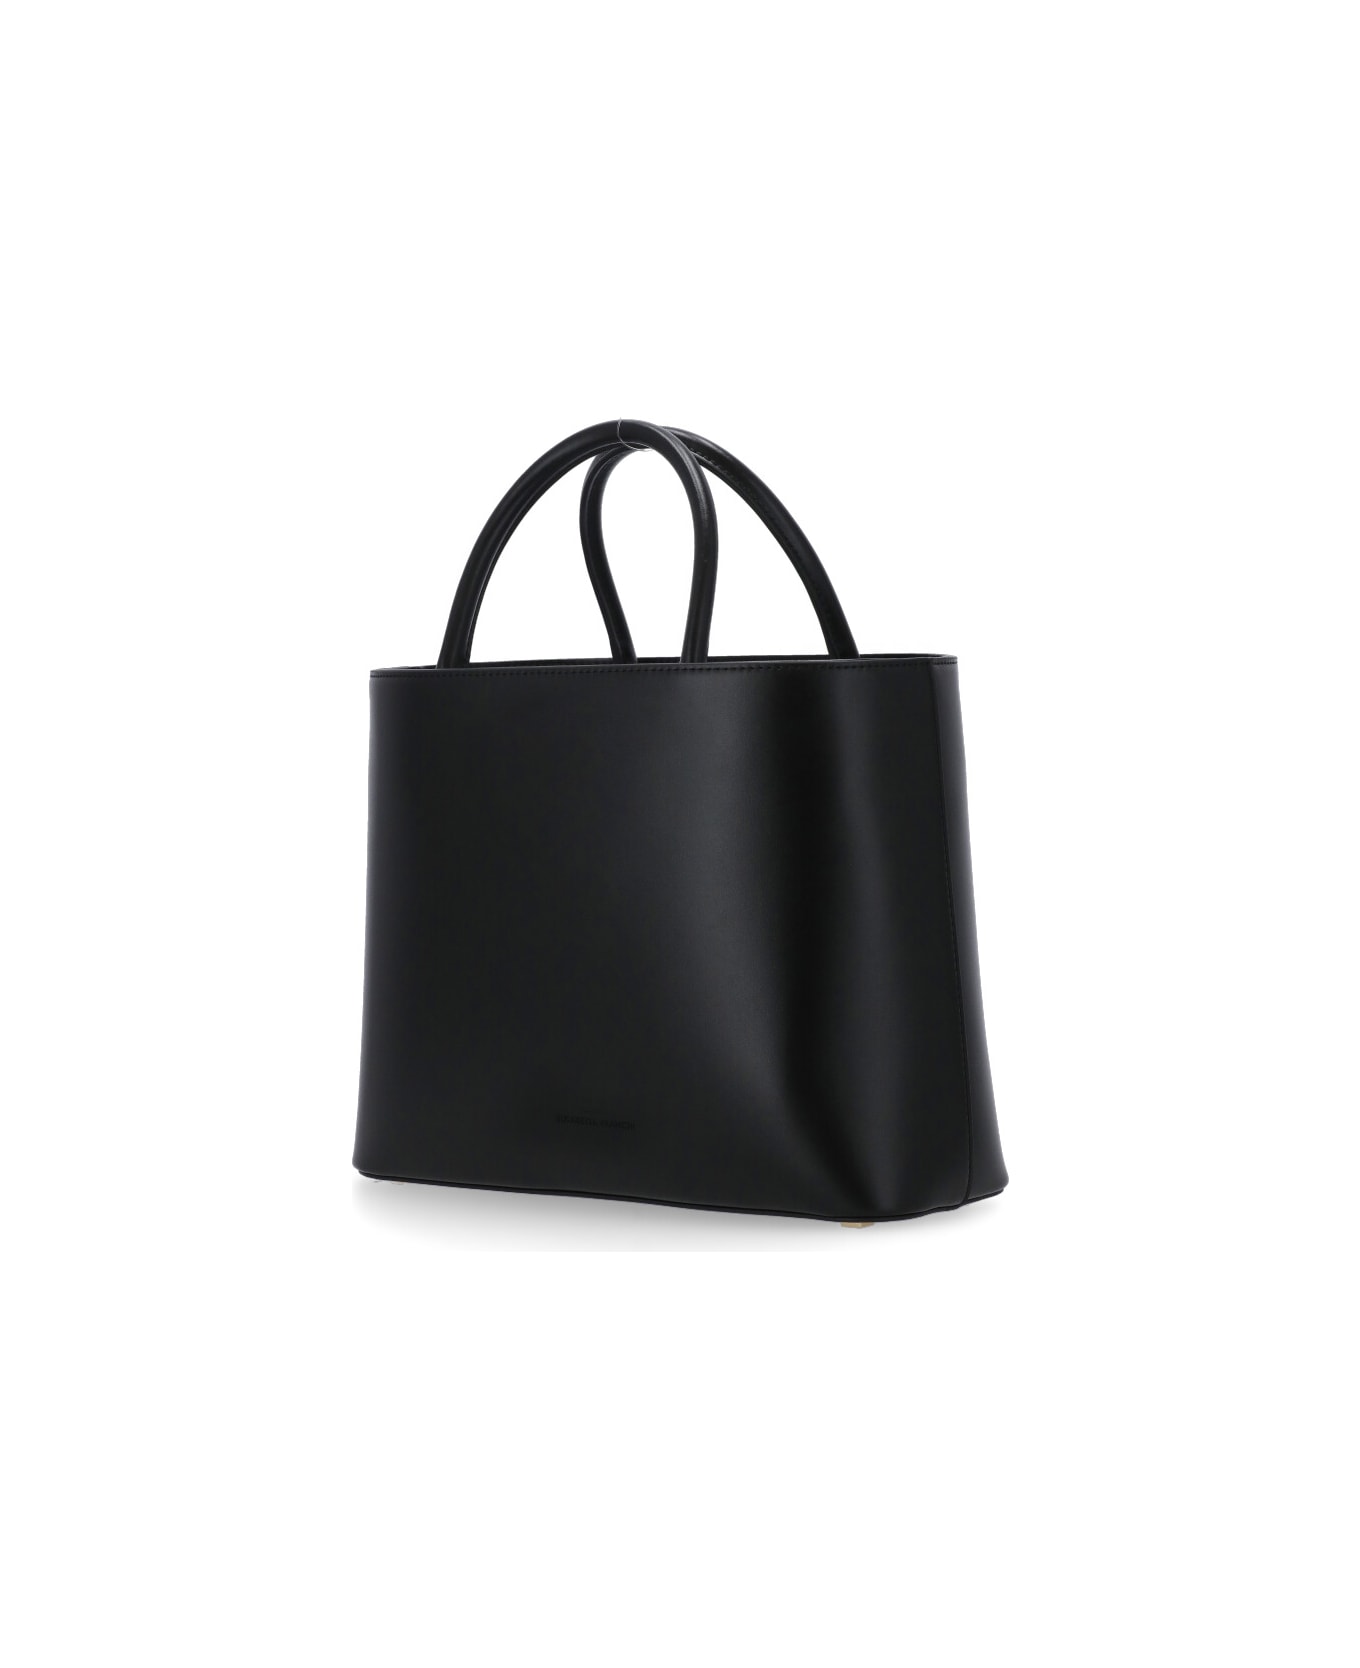 Elisabetta Franchi Shopper Bag Elisabetta Franchi - Black トートバッグ